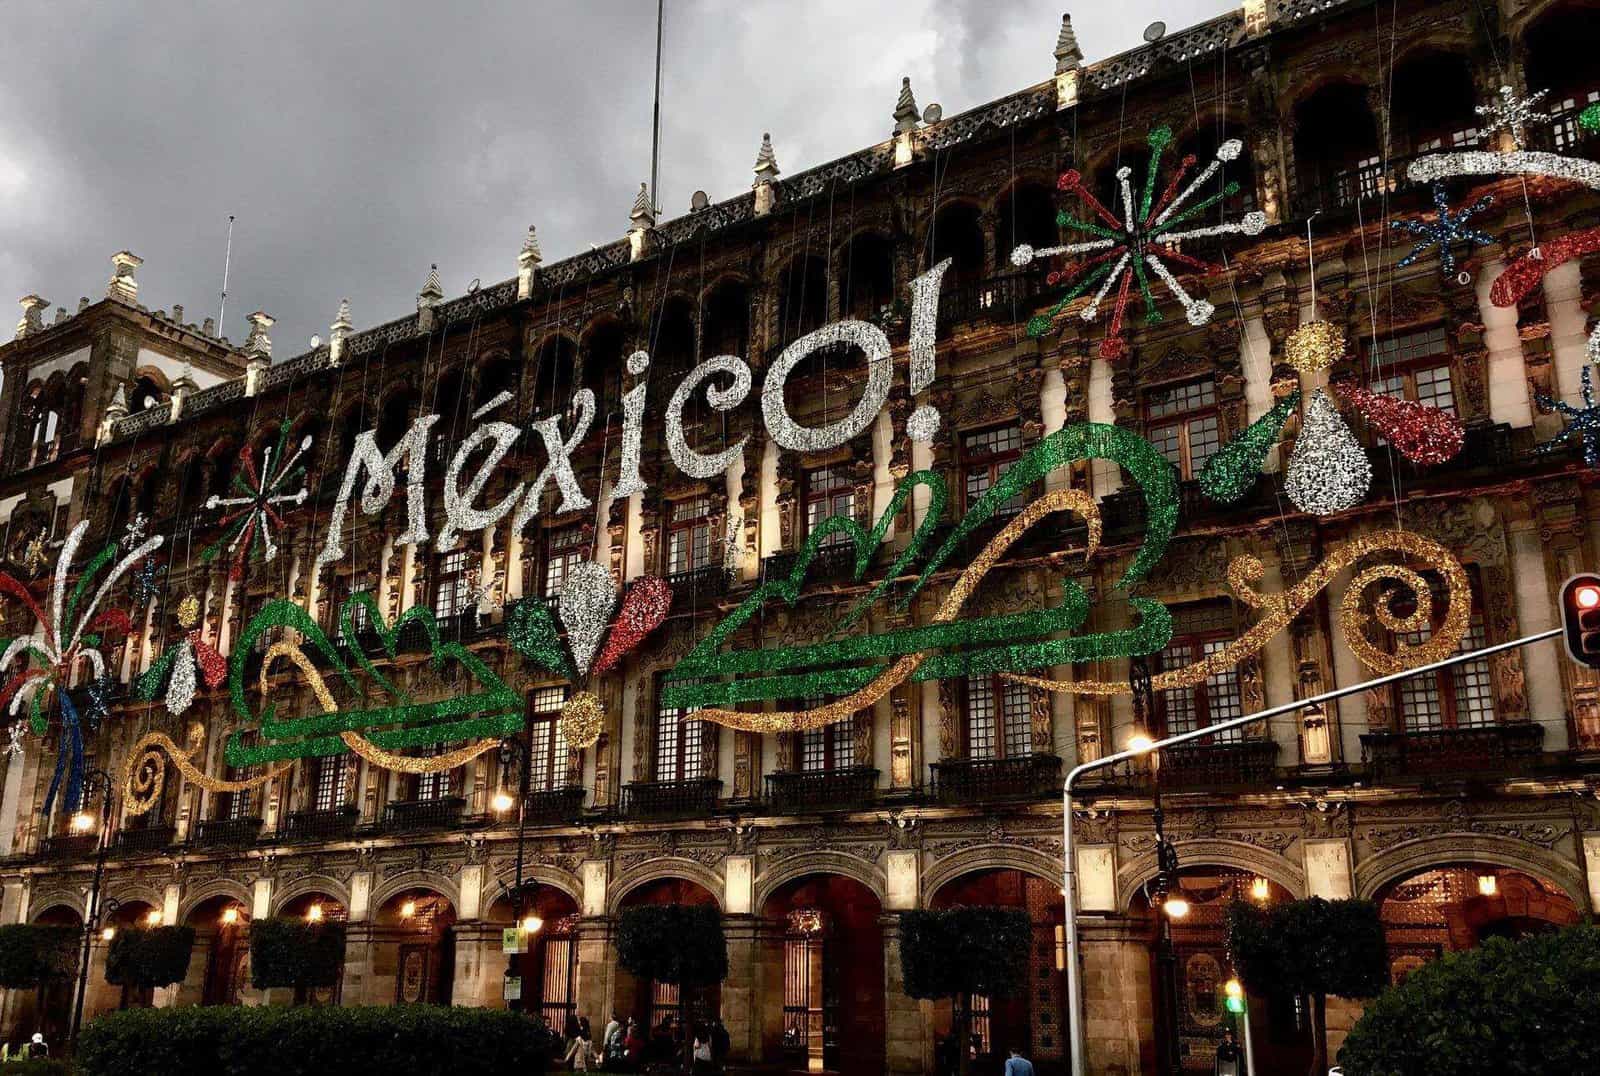 Meksyk - kiedy jechać, aby cieszyć się wyprawą?